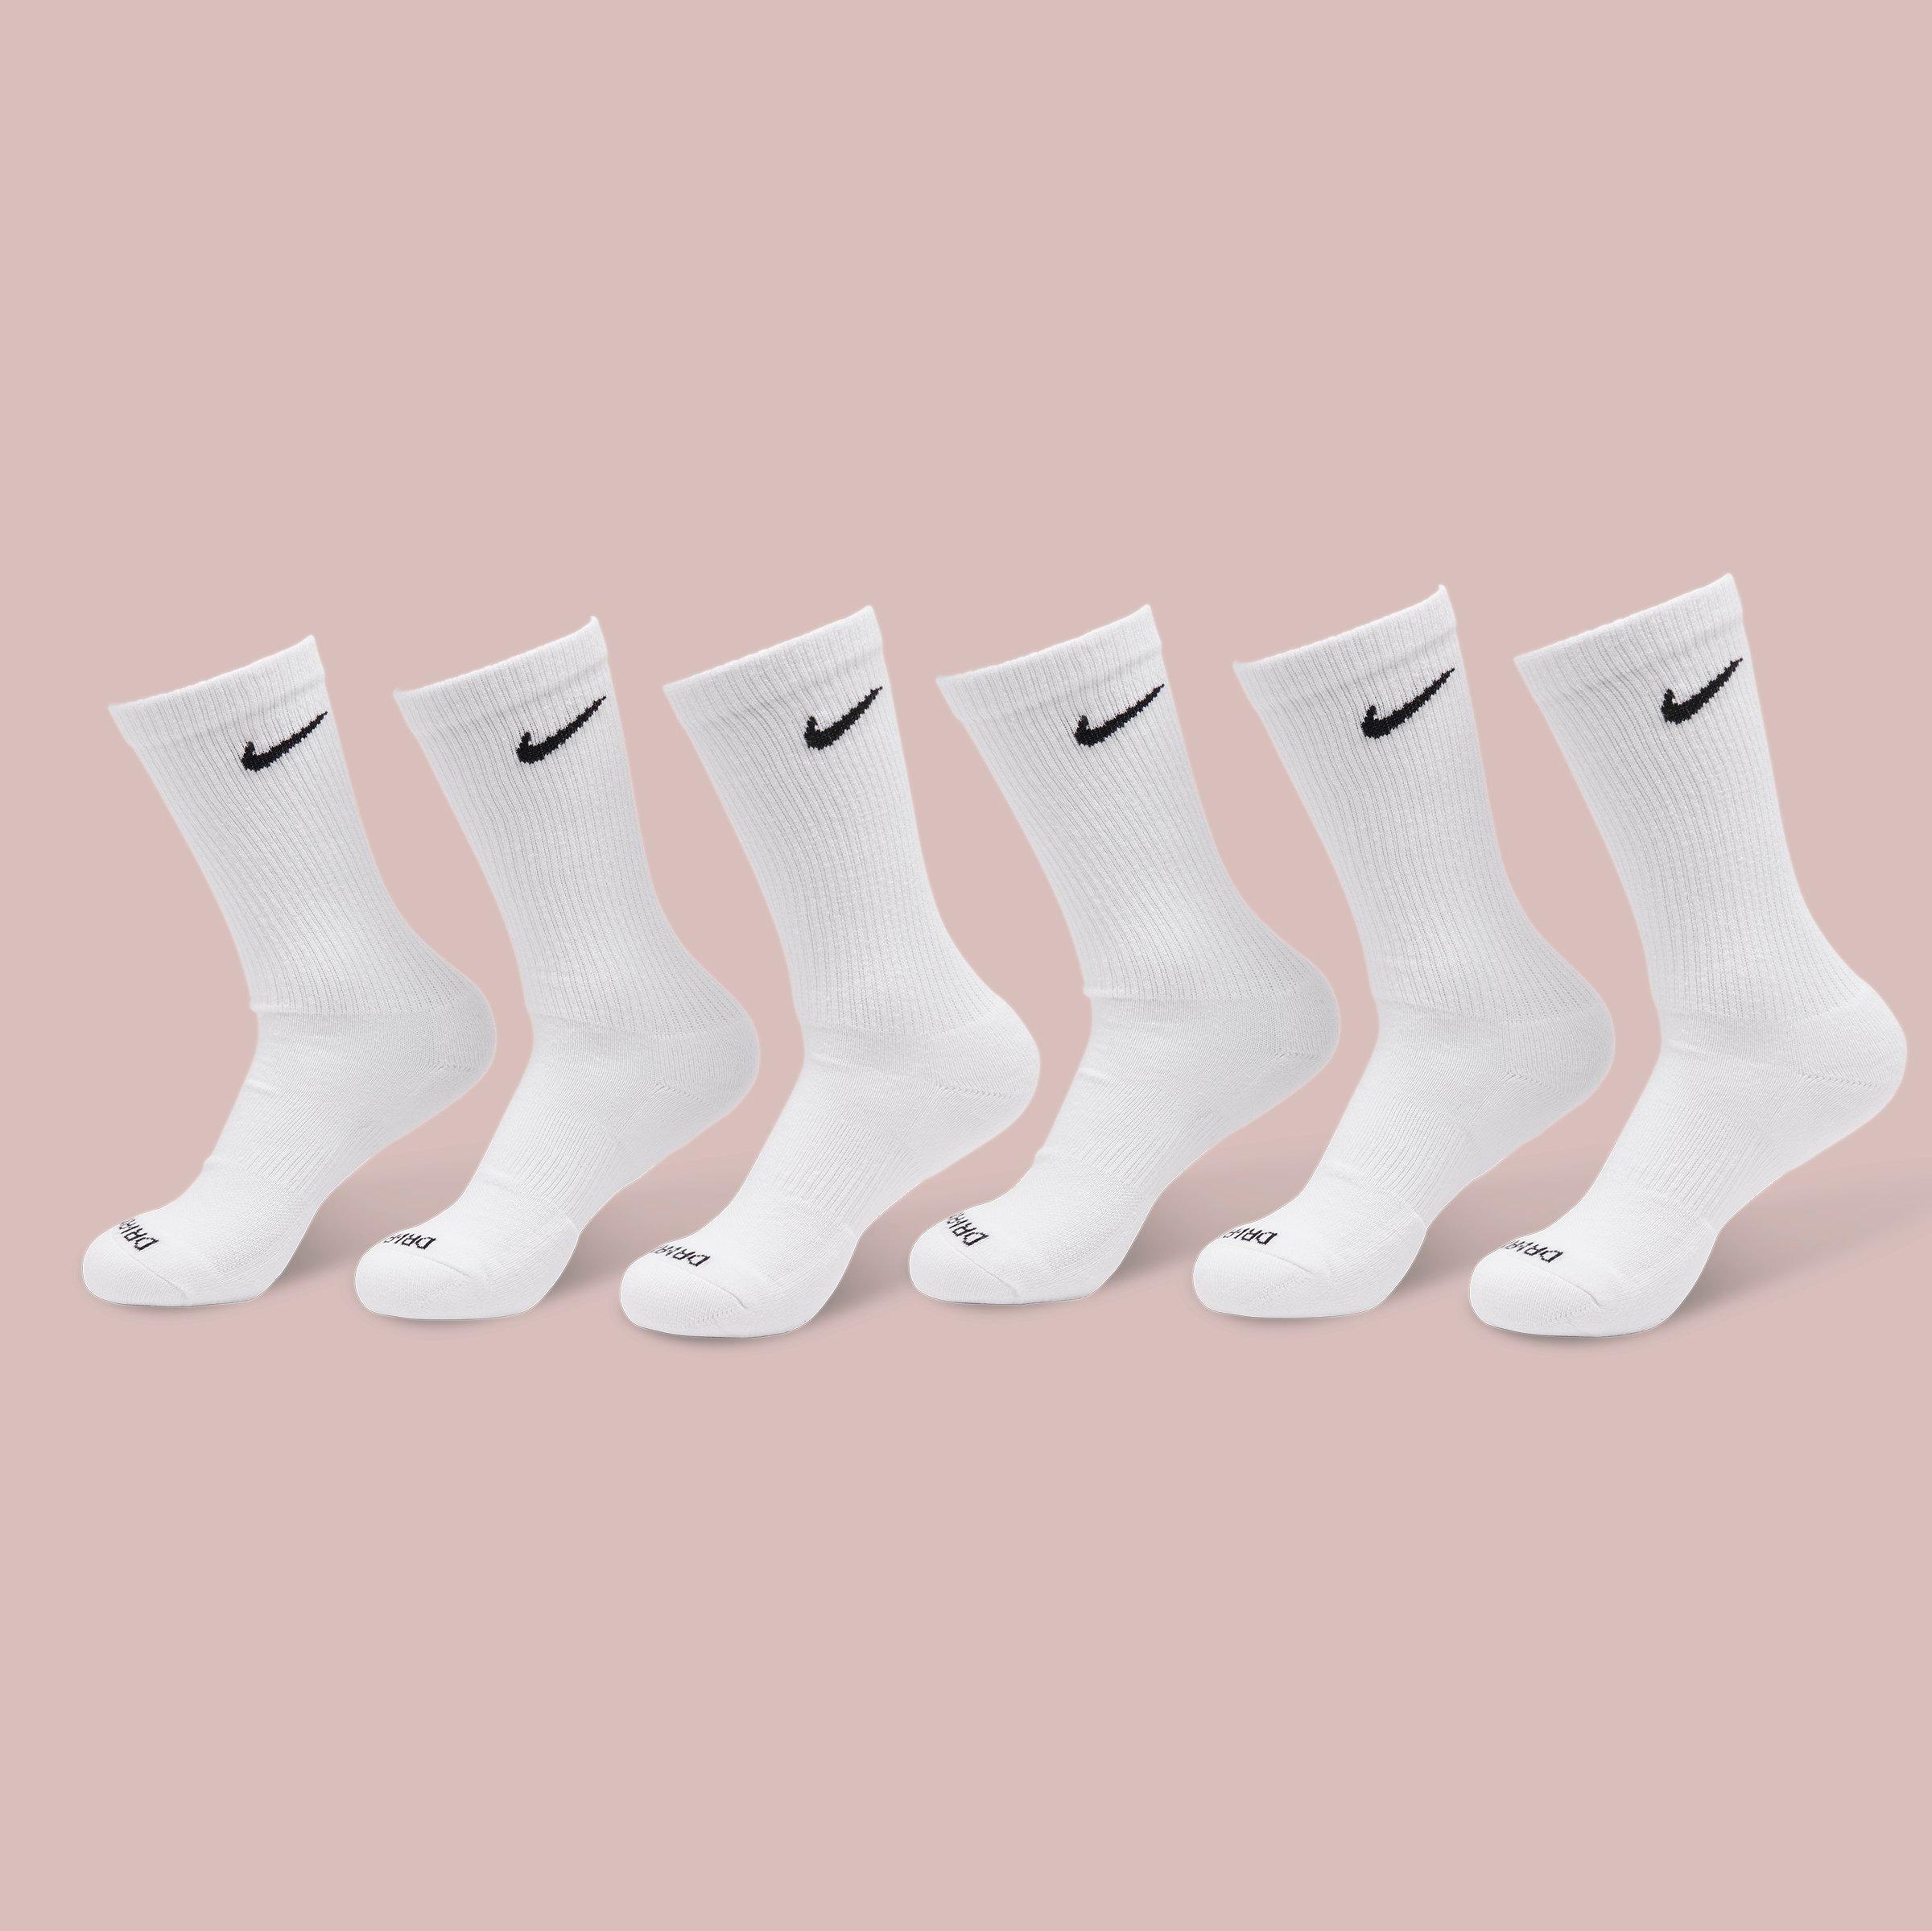 6 pack of white nike socks